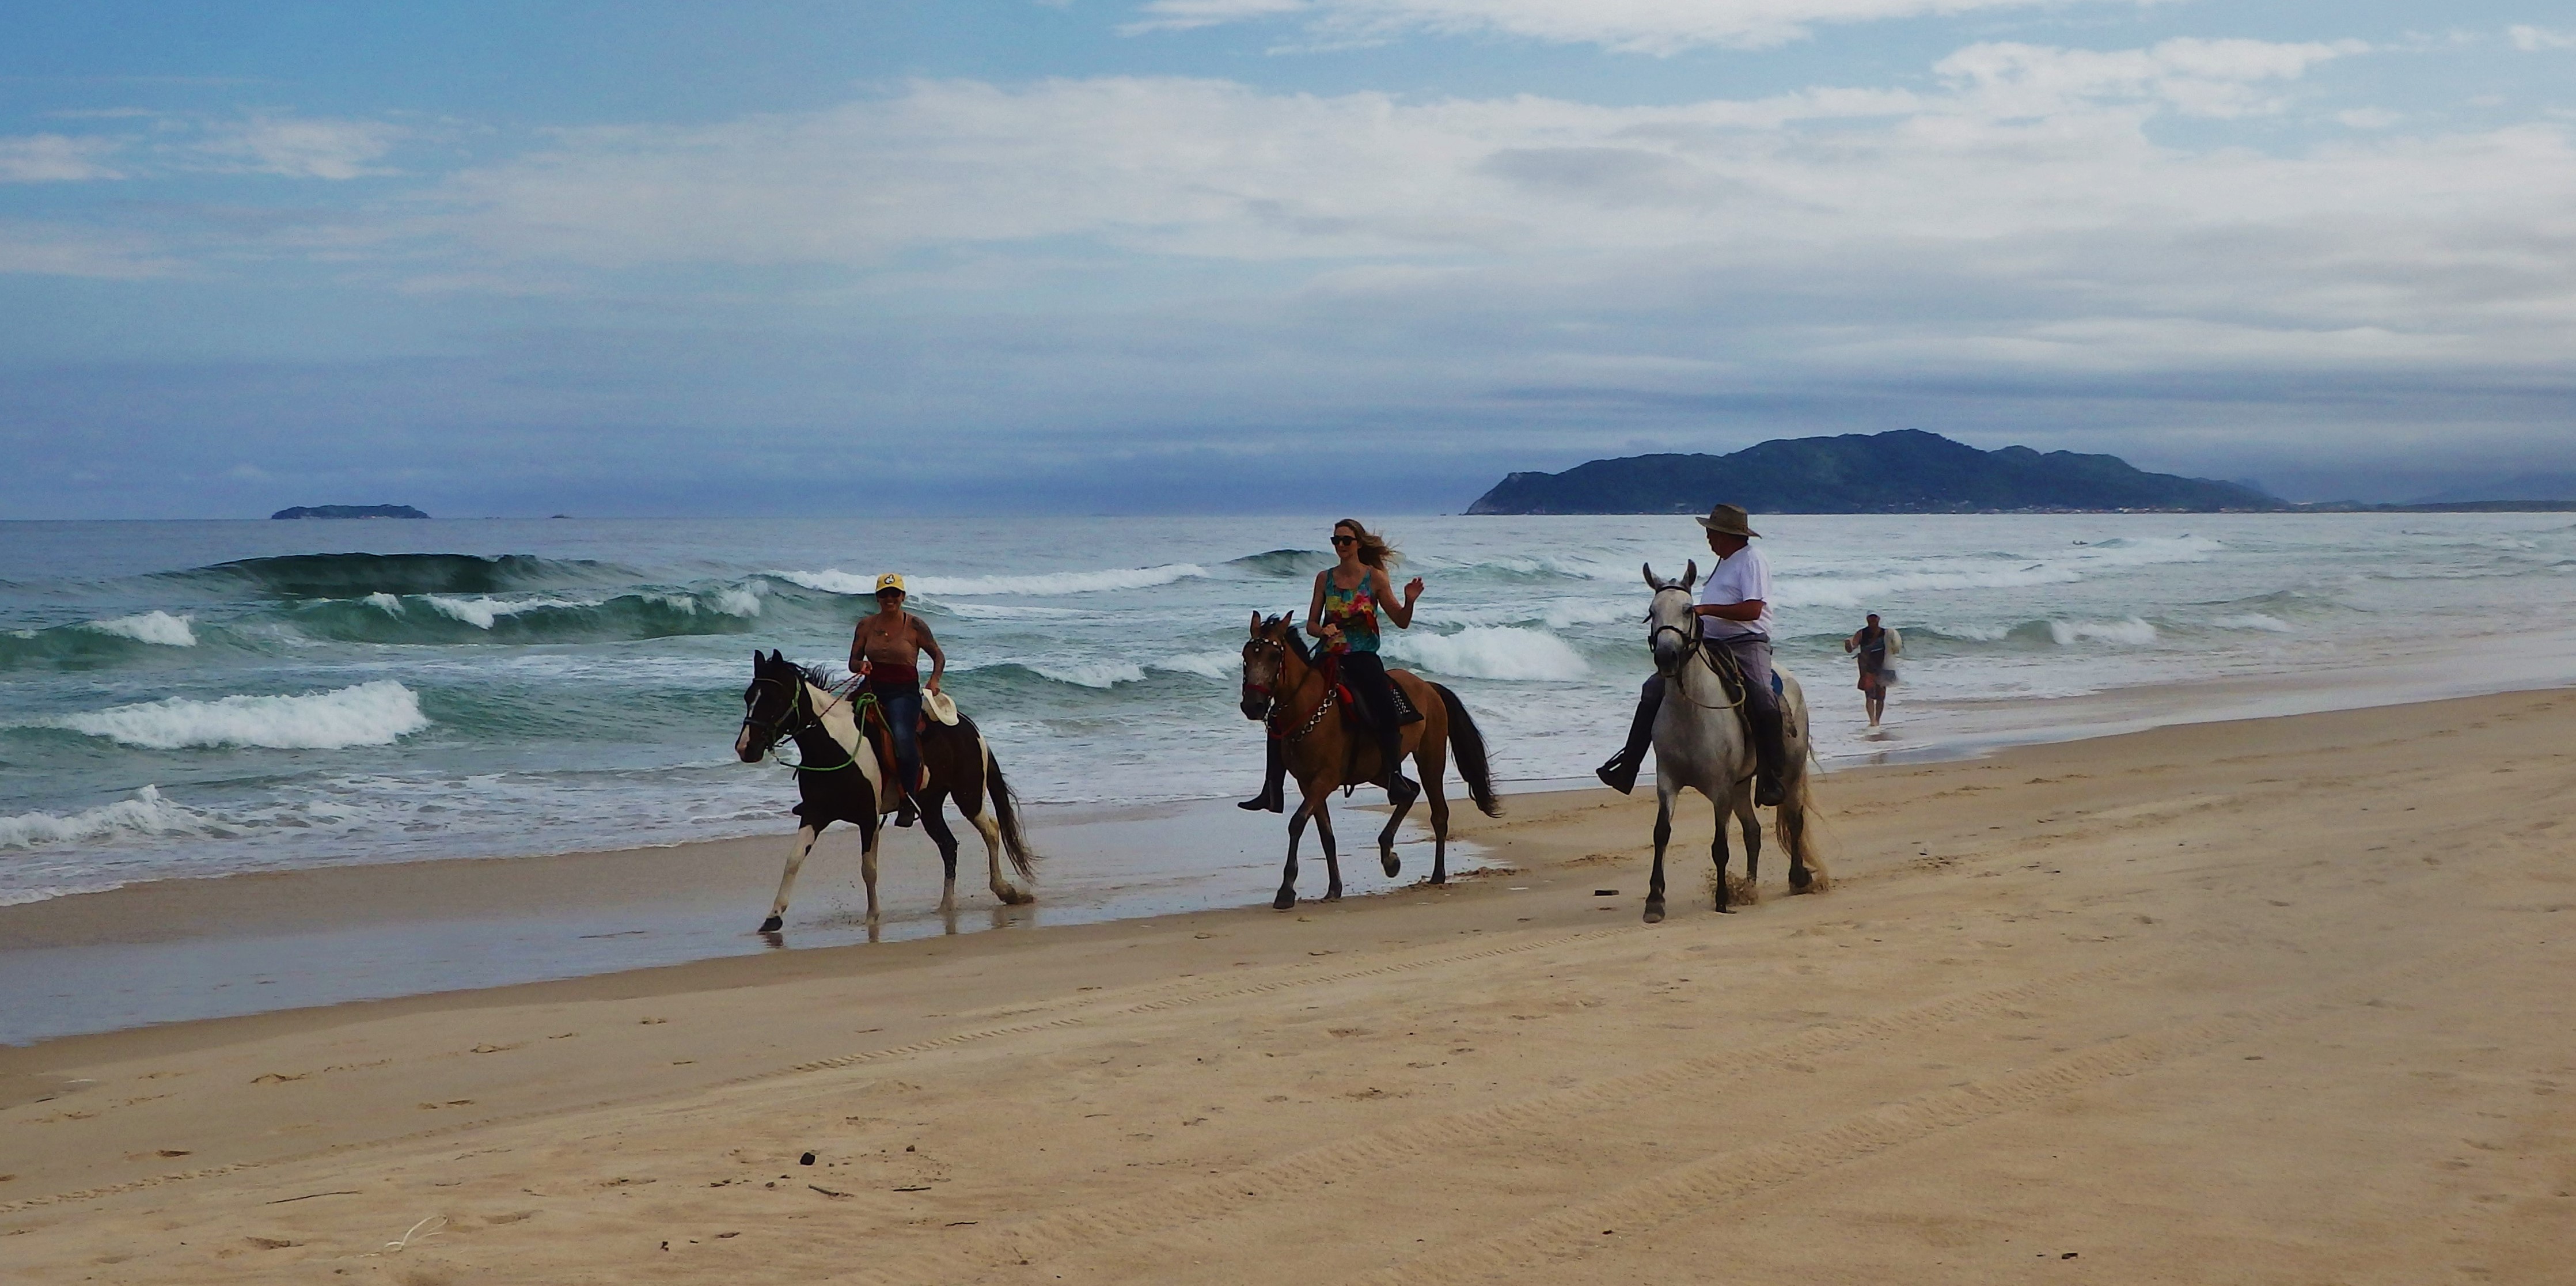 Adventure Pursuit | Santa Catarina beaches